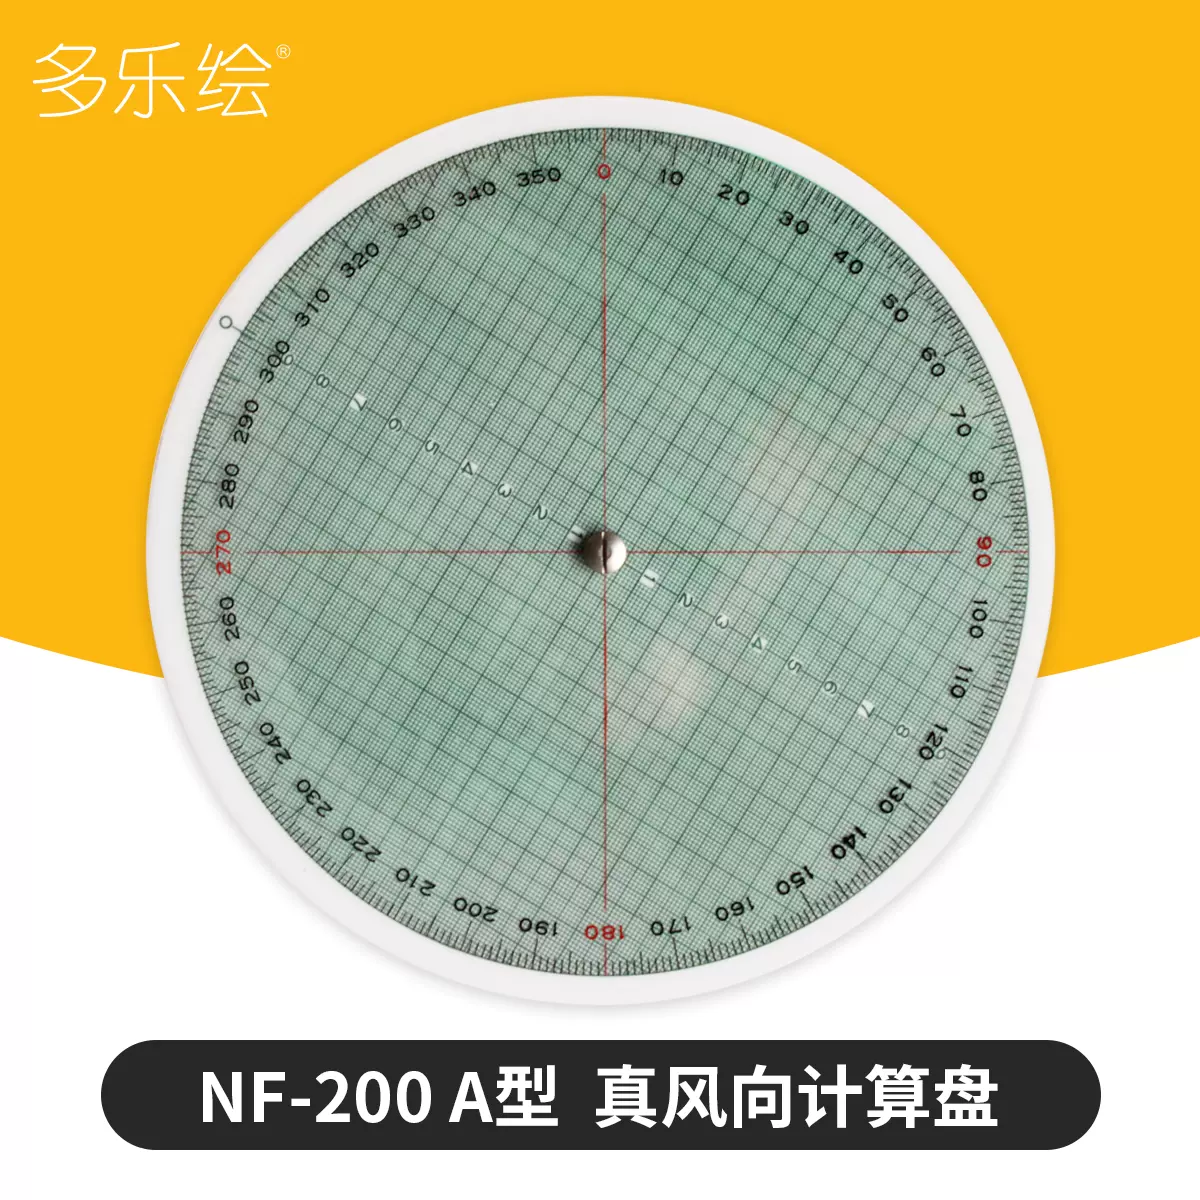 船用航海航空真風向風速計算羅盤真風向標示卡計算尺盤NF-200 A型-Taobao